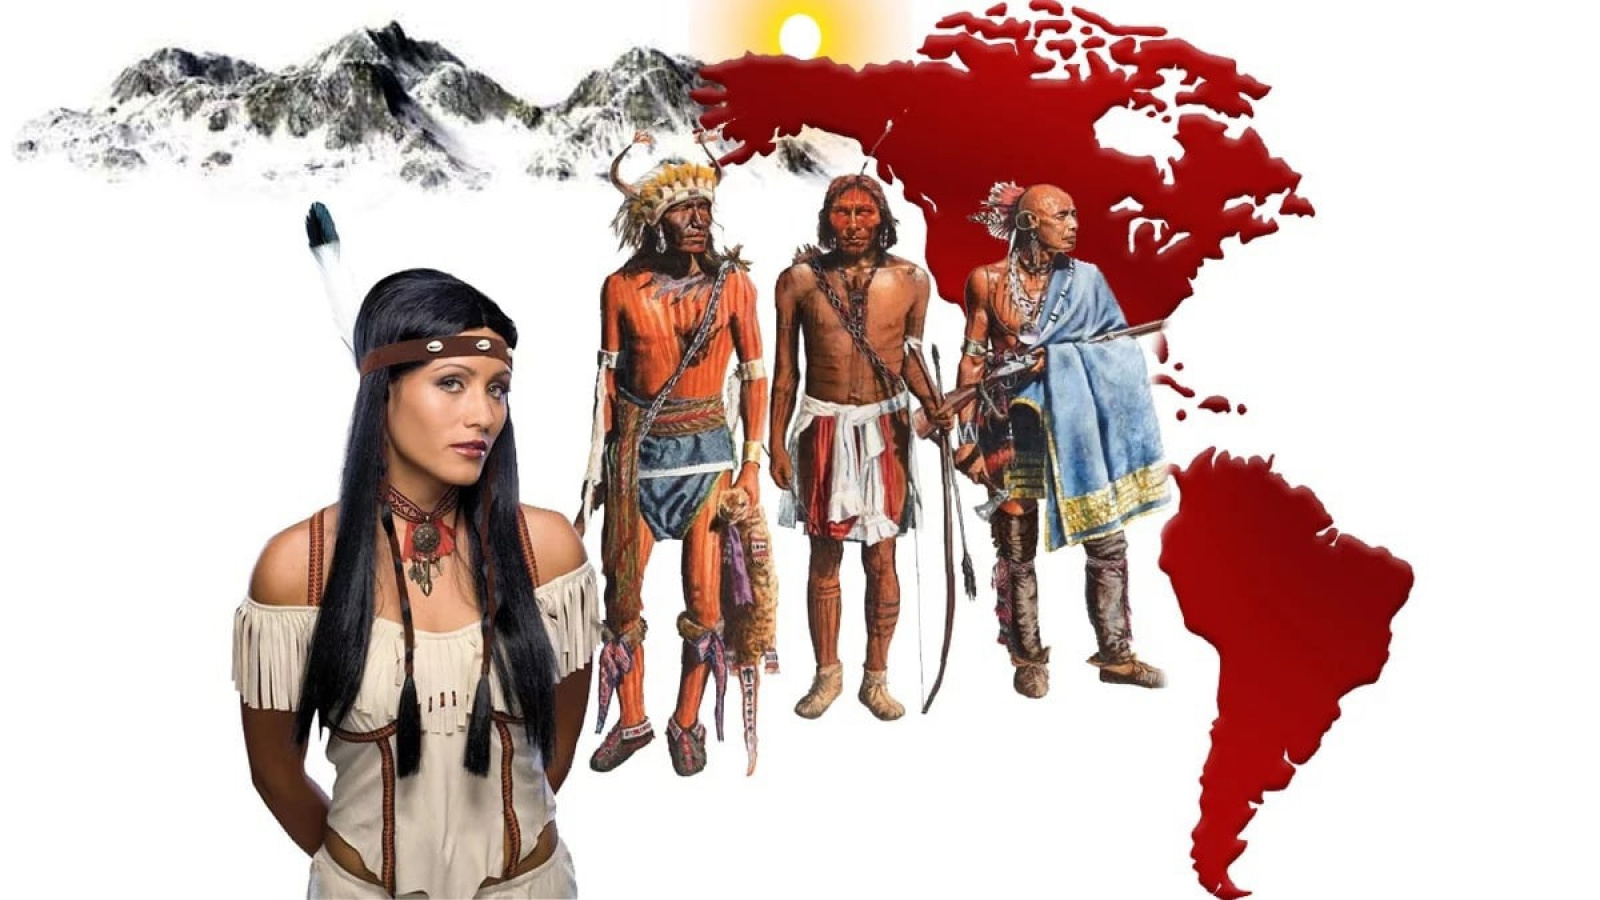 Коренное население северной америки эскимосы и индейцы. Индейские племена Северной Америки и Южной Америки. Племена индейцев Северной и Южной Америки. Расселение индейцев Северной Америки. Коренные индейцы Северной Америки.